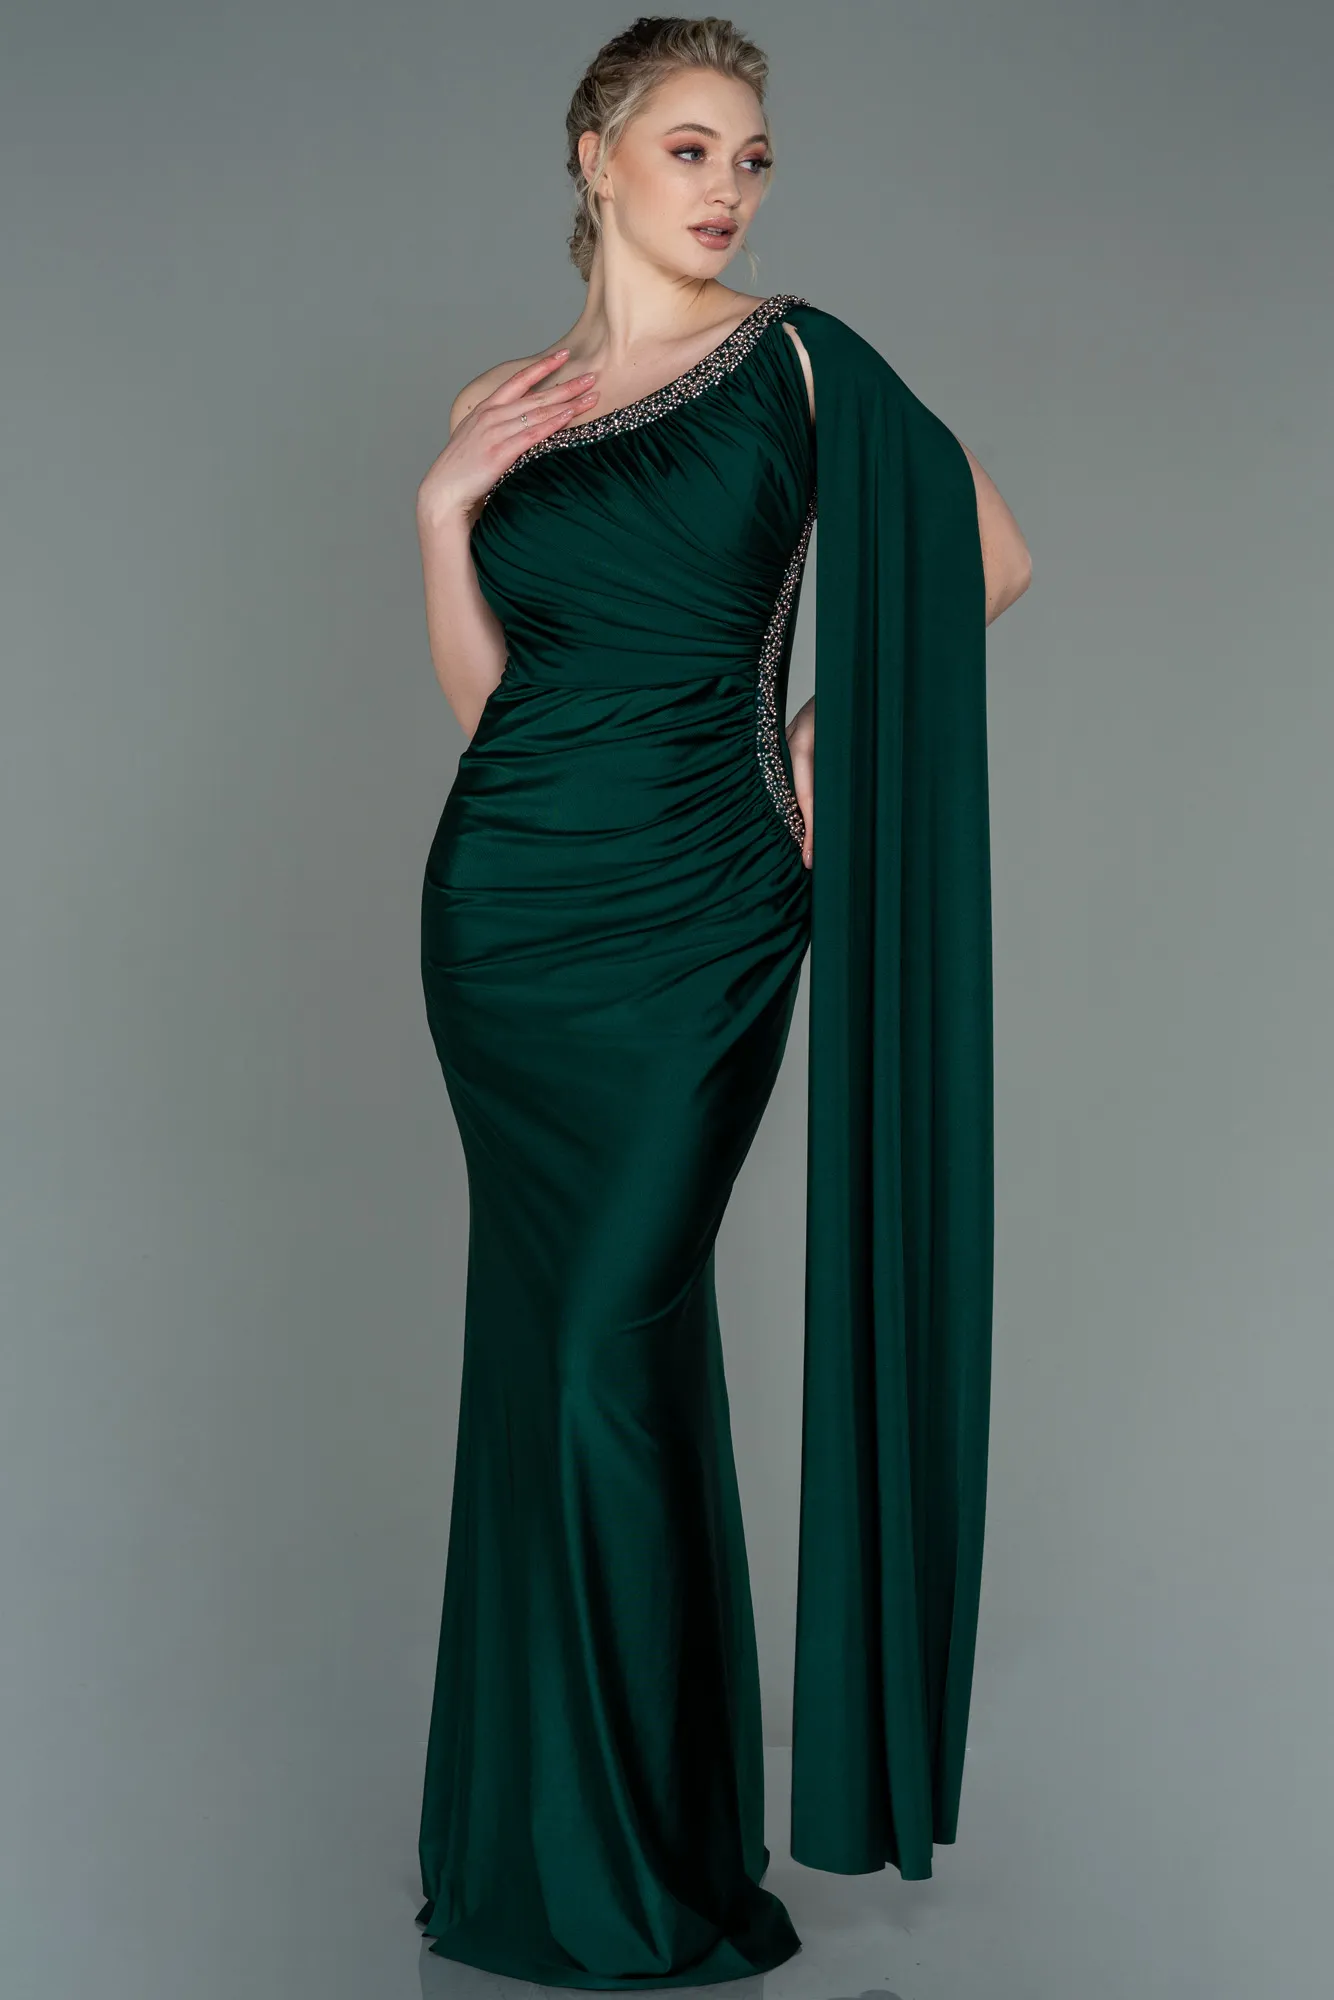 Emerald Green-Long Evening Dress ABU2663